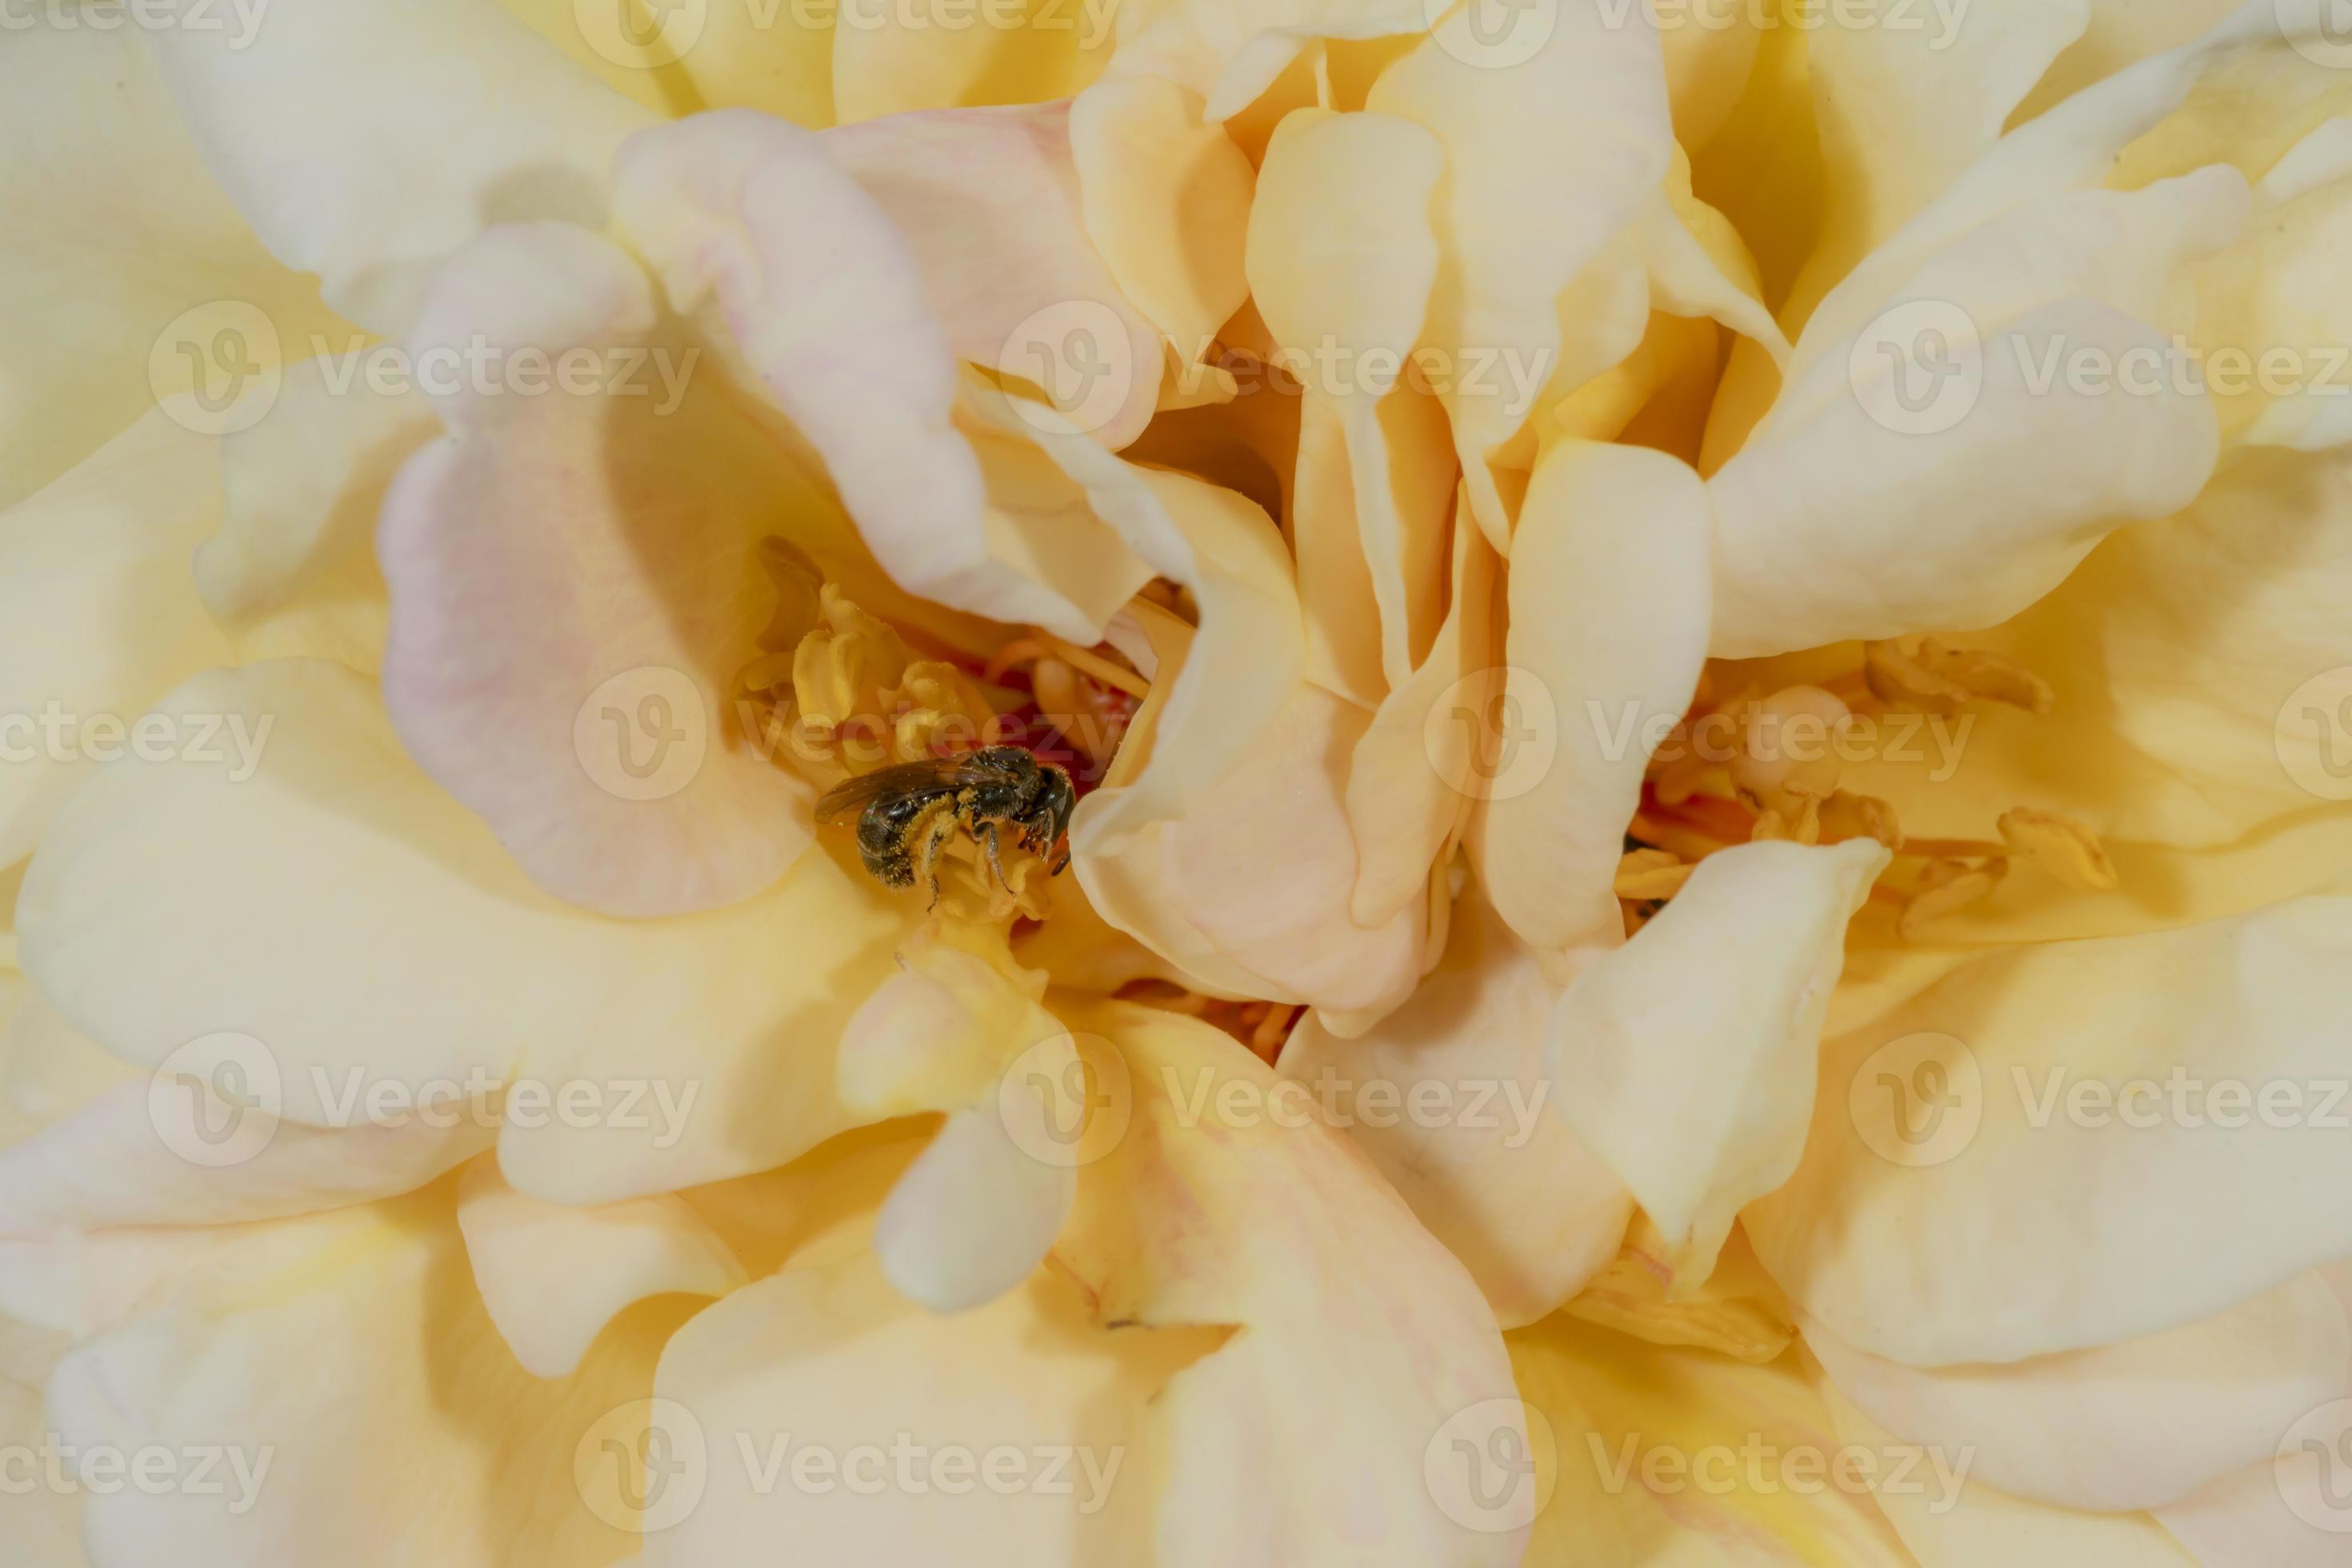 kleine wilde bij zit in een groot geeloranje rozenblaadje foto